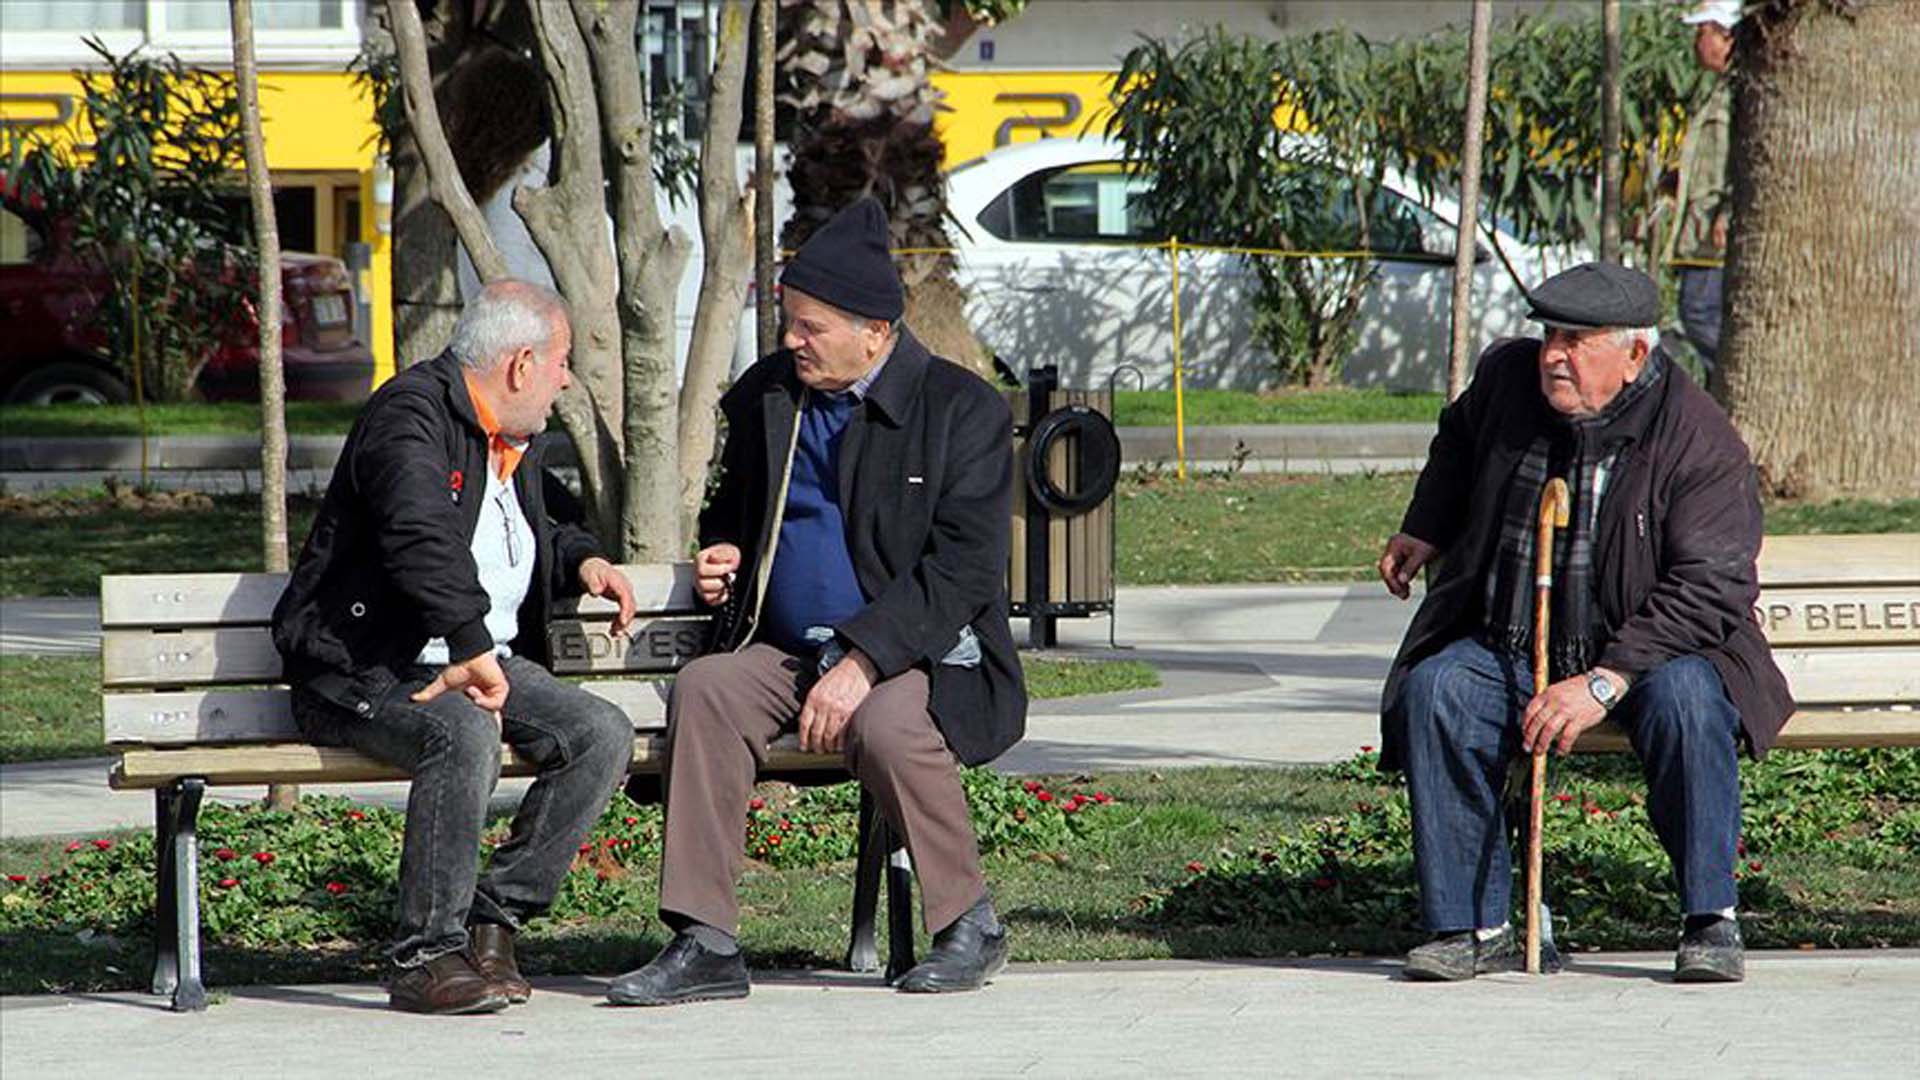 TBMM'de çarpıcı çalışma! Türkiye nüfusu yaşlanıyor! Her 4 kişiden 1'i 65 yaş üstü olacak 